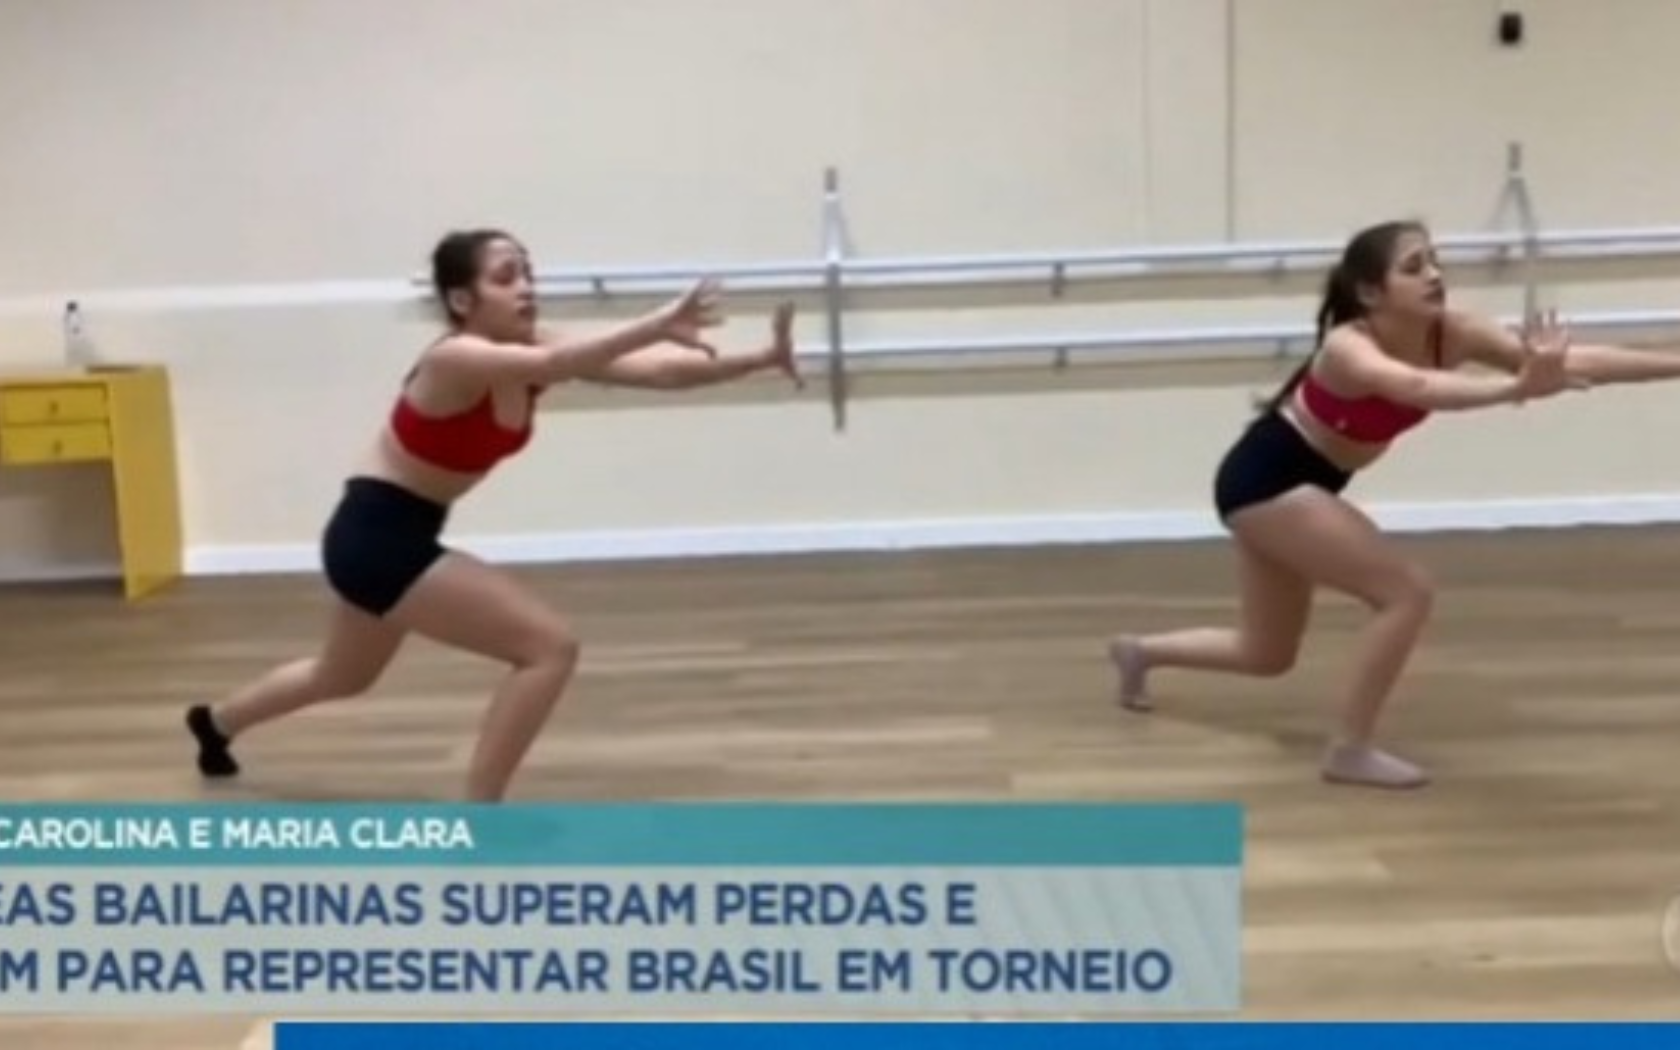 Gêmeas bailarinas lutam para representar o Brasil em torneio na Alemanha